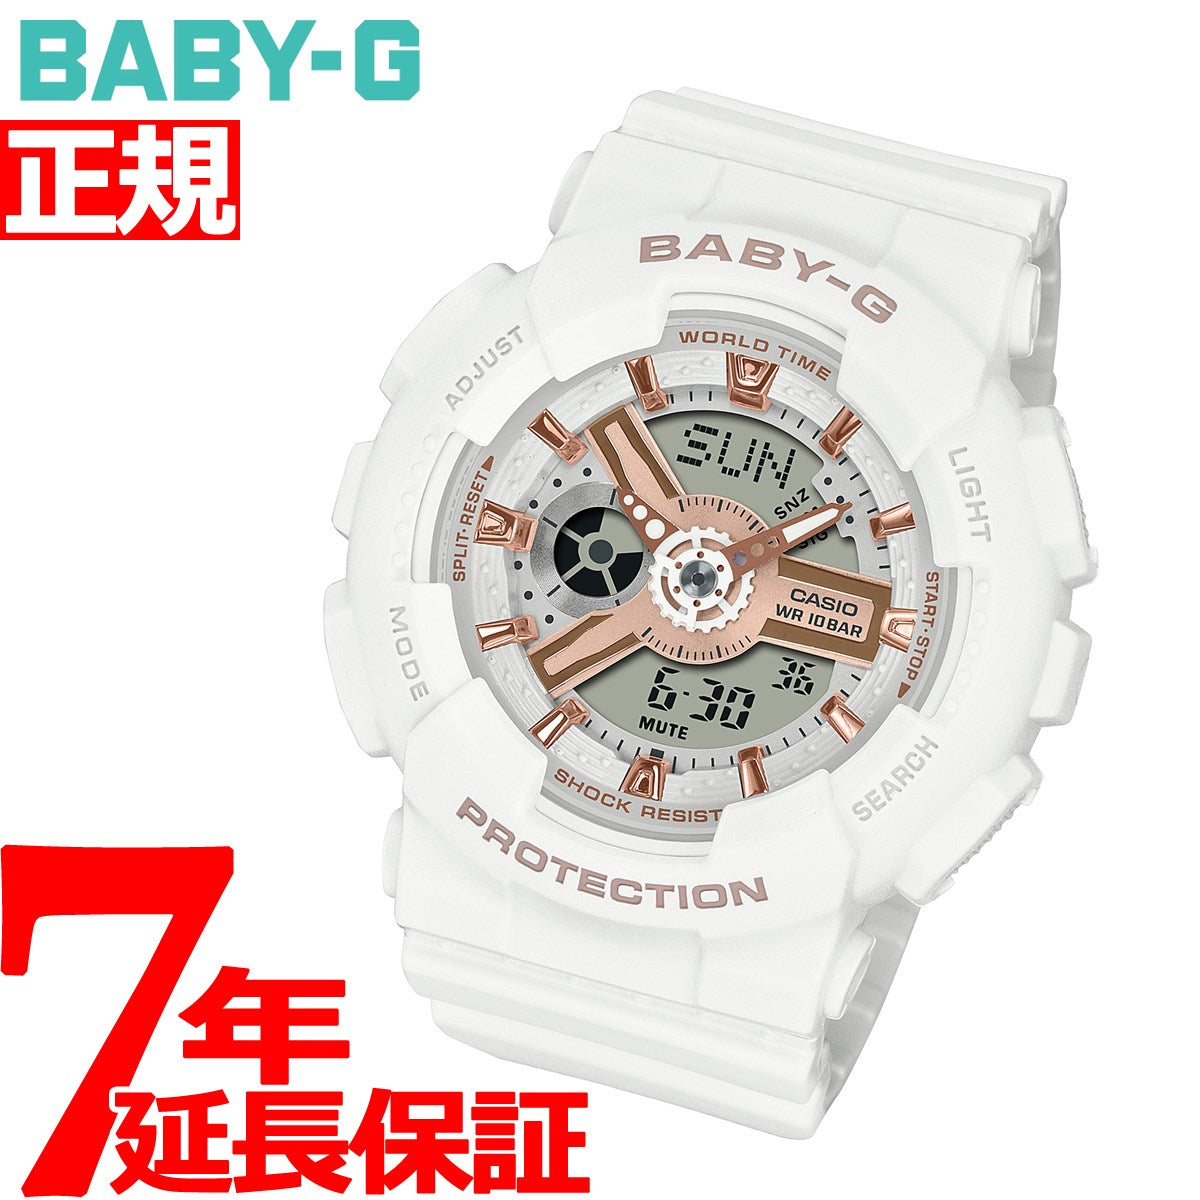 BABY-G カシオ ベビーG レディース 腕時計 BA-110XRG-7AJF ホワイト 